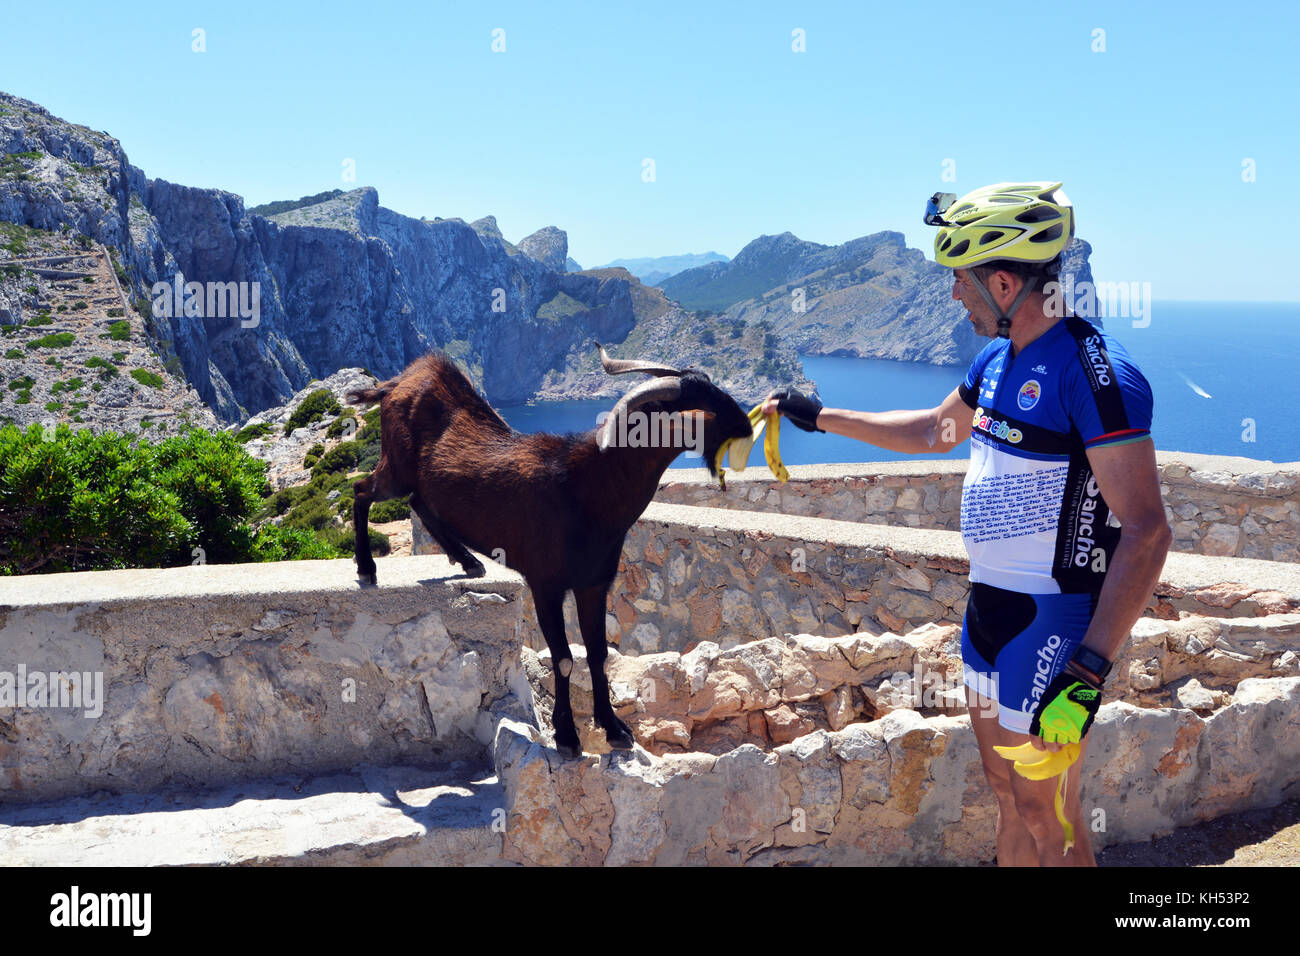 Ein Radfahrer Feeds eine Ziege eine Bananenschale beim Reiten seines Fahrrades zum Cap Formentor Leuchtturm, Pollenca, Mallorca, Balearen, Spanien Stockfoto